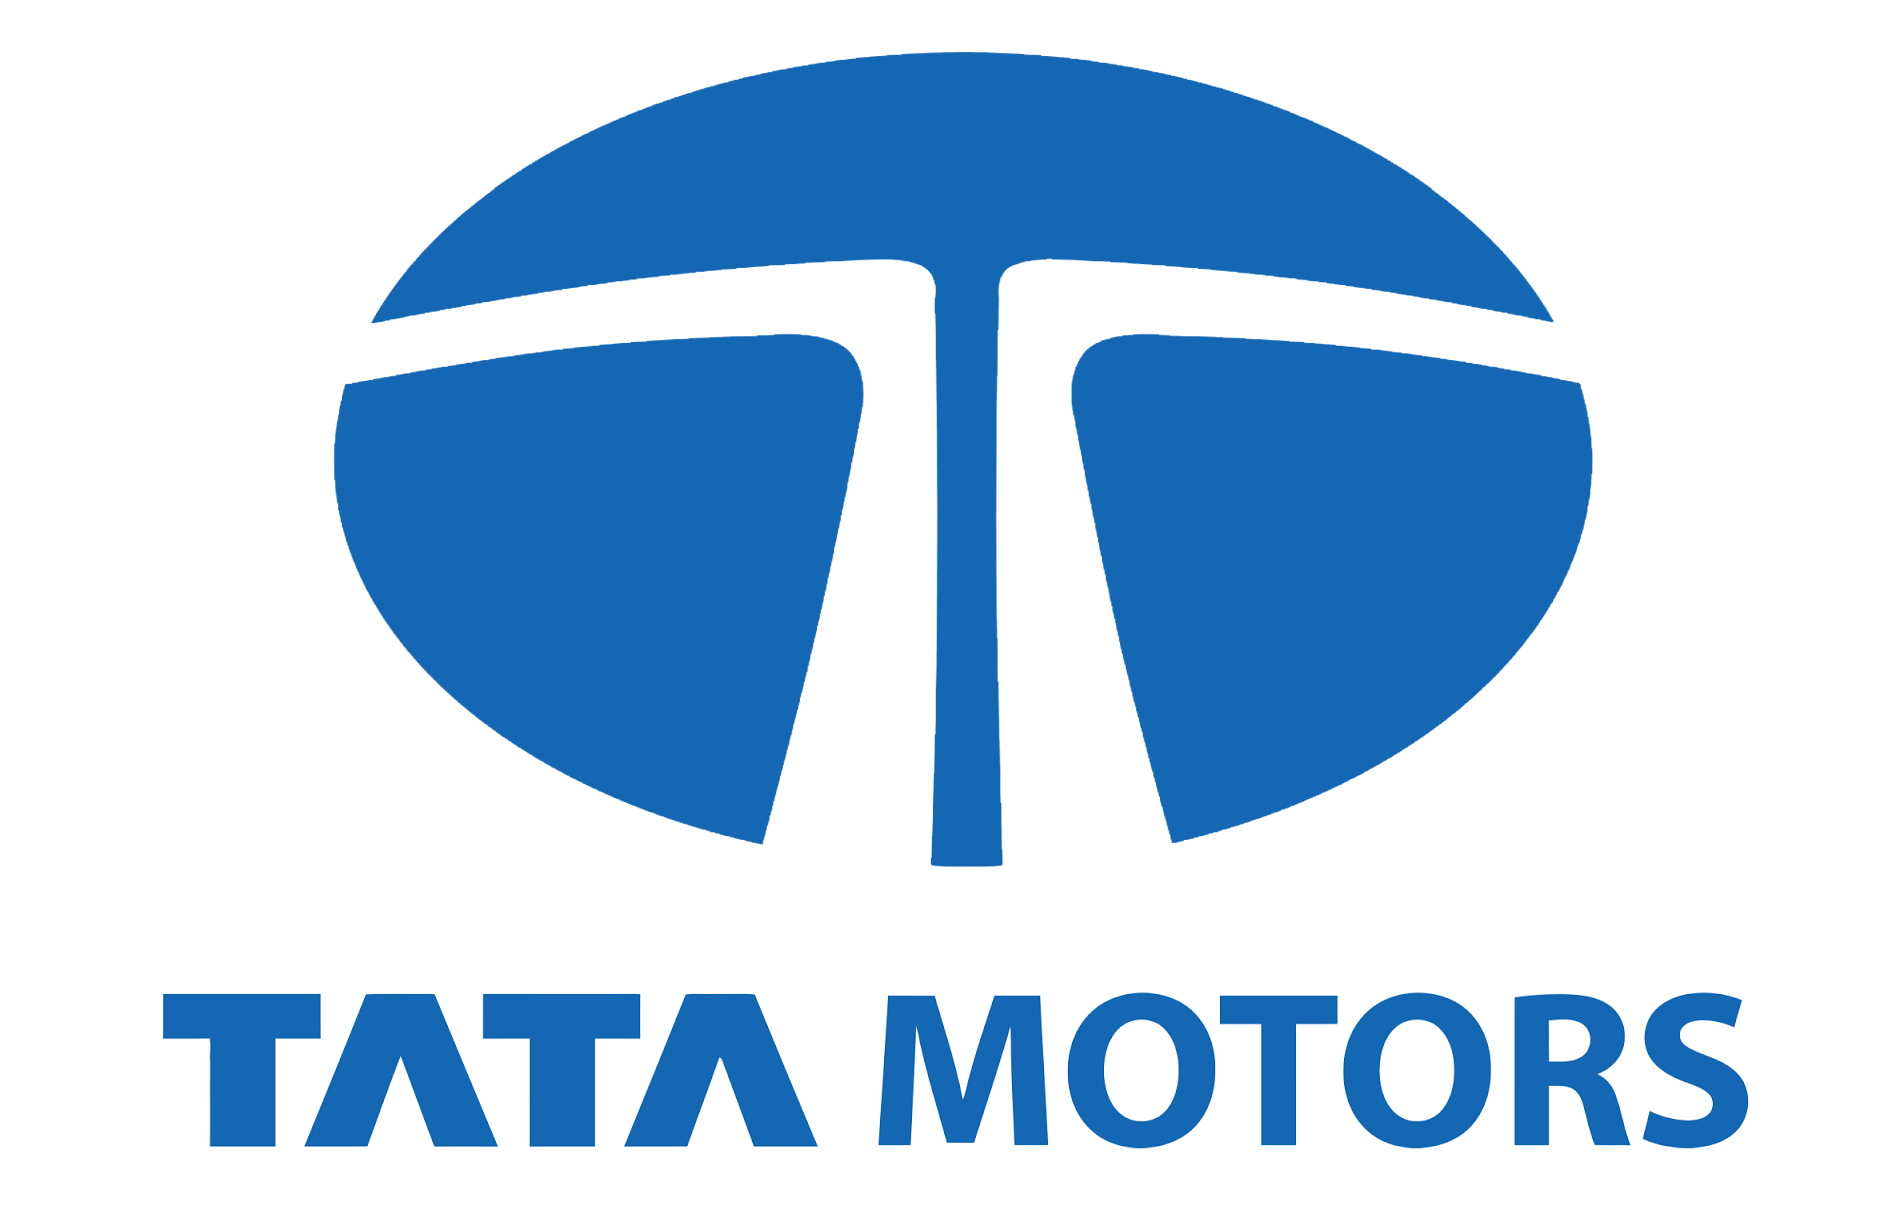 Tata Motors Cars Showroom - Varenyam Motor Car - Logo